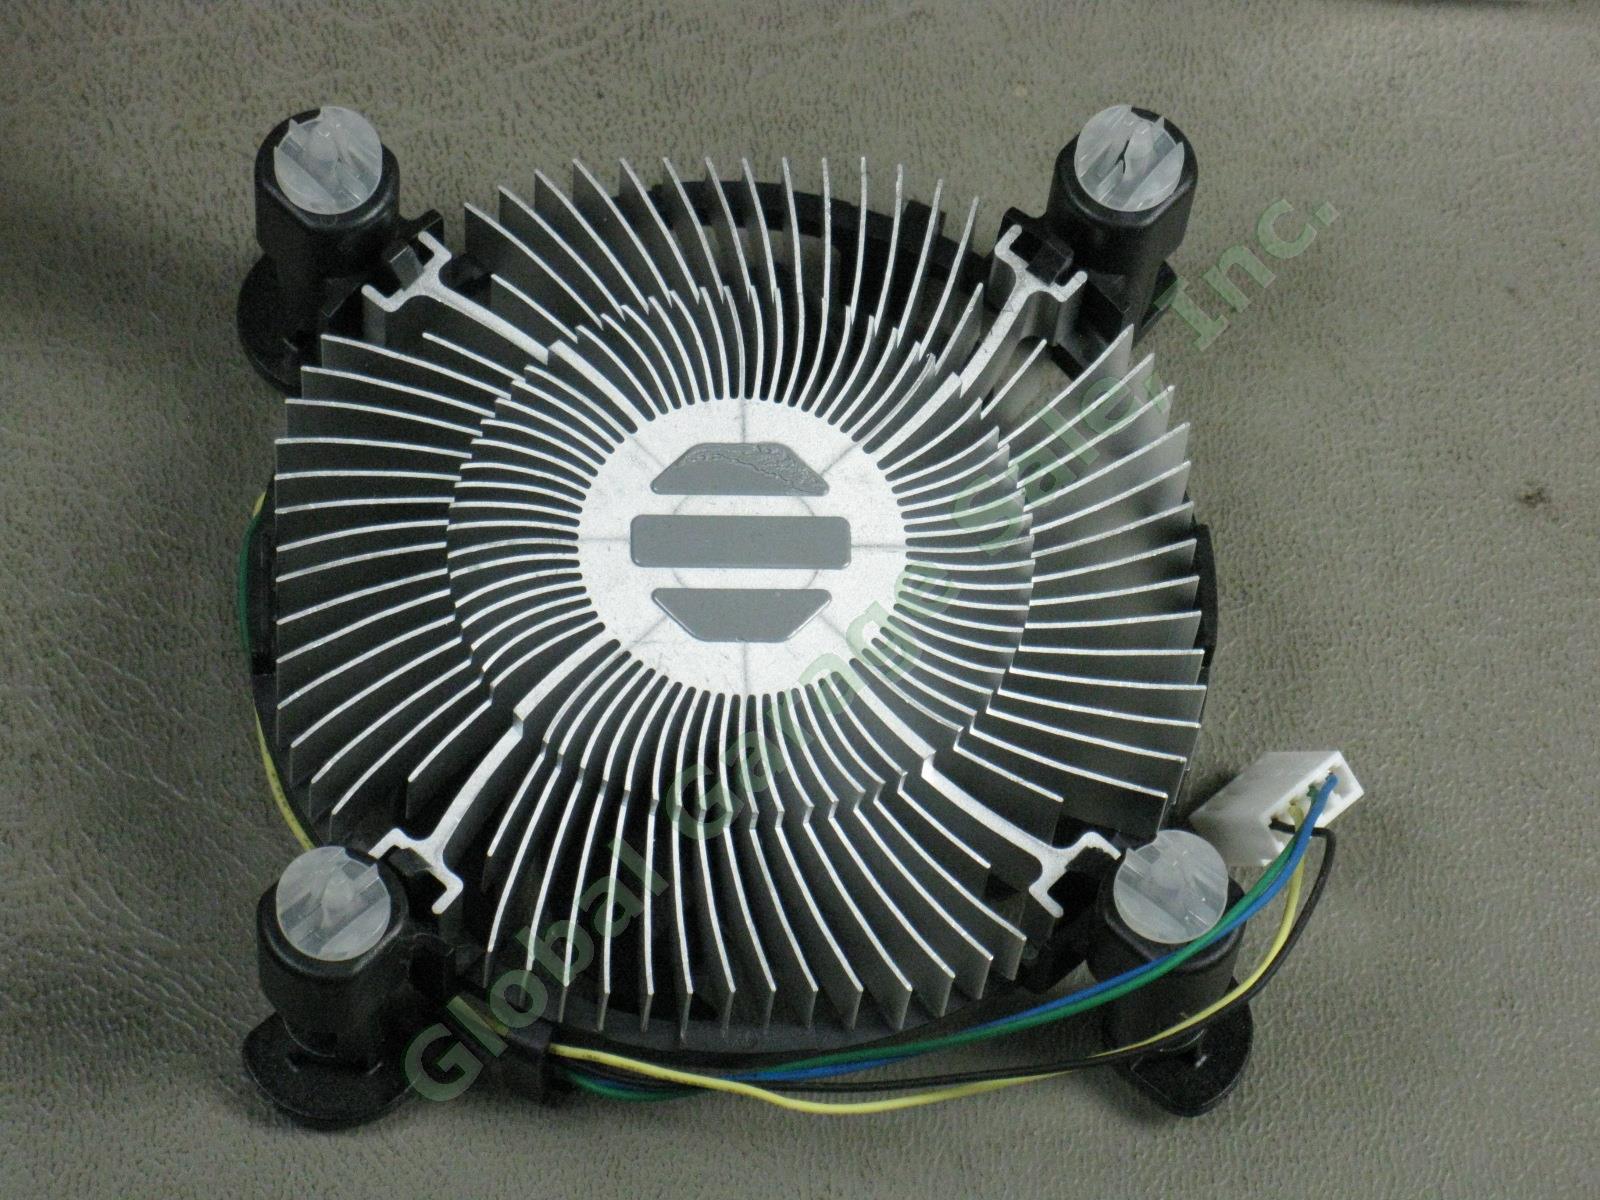 25 NEW Intel E98290-001 LGA1155 Heatsink CPU Cooler Cooling Fans Lot Intel i3 NR 2